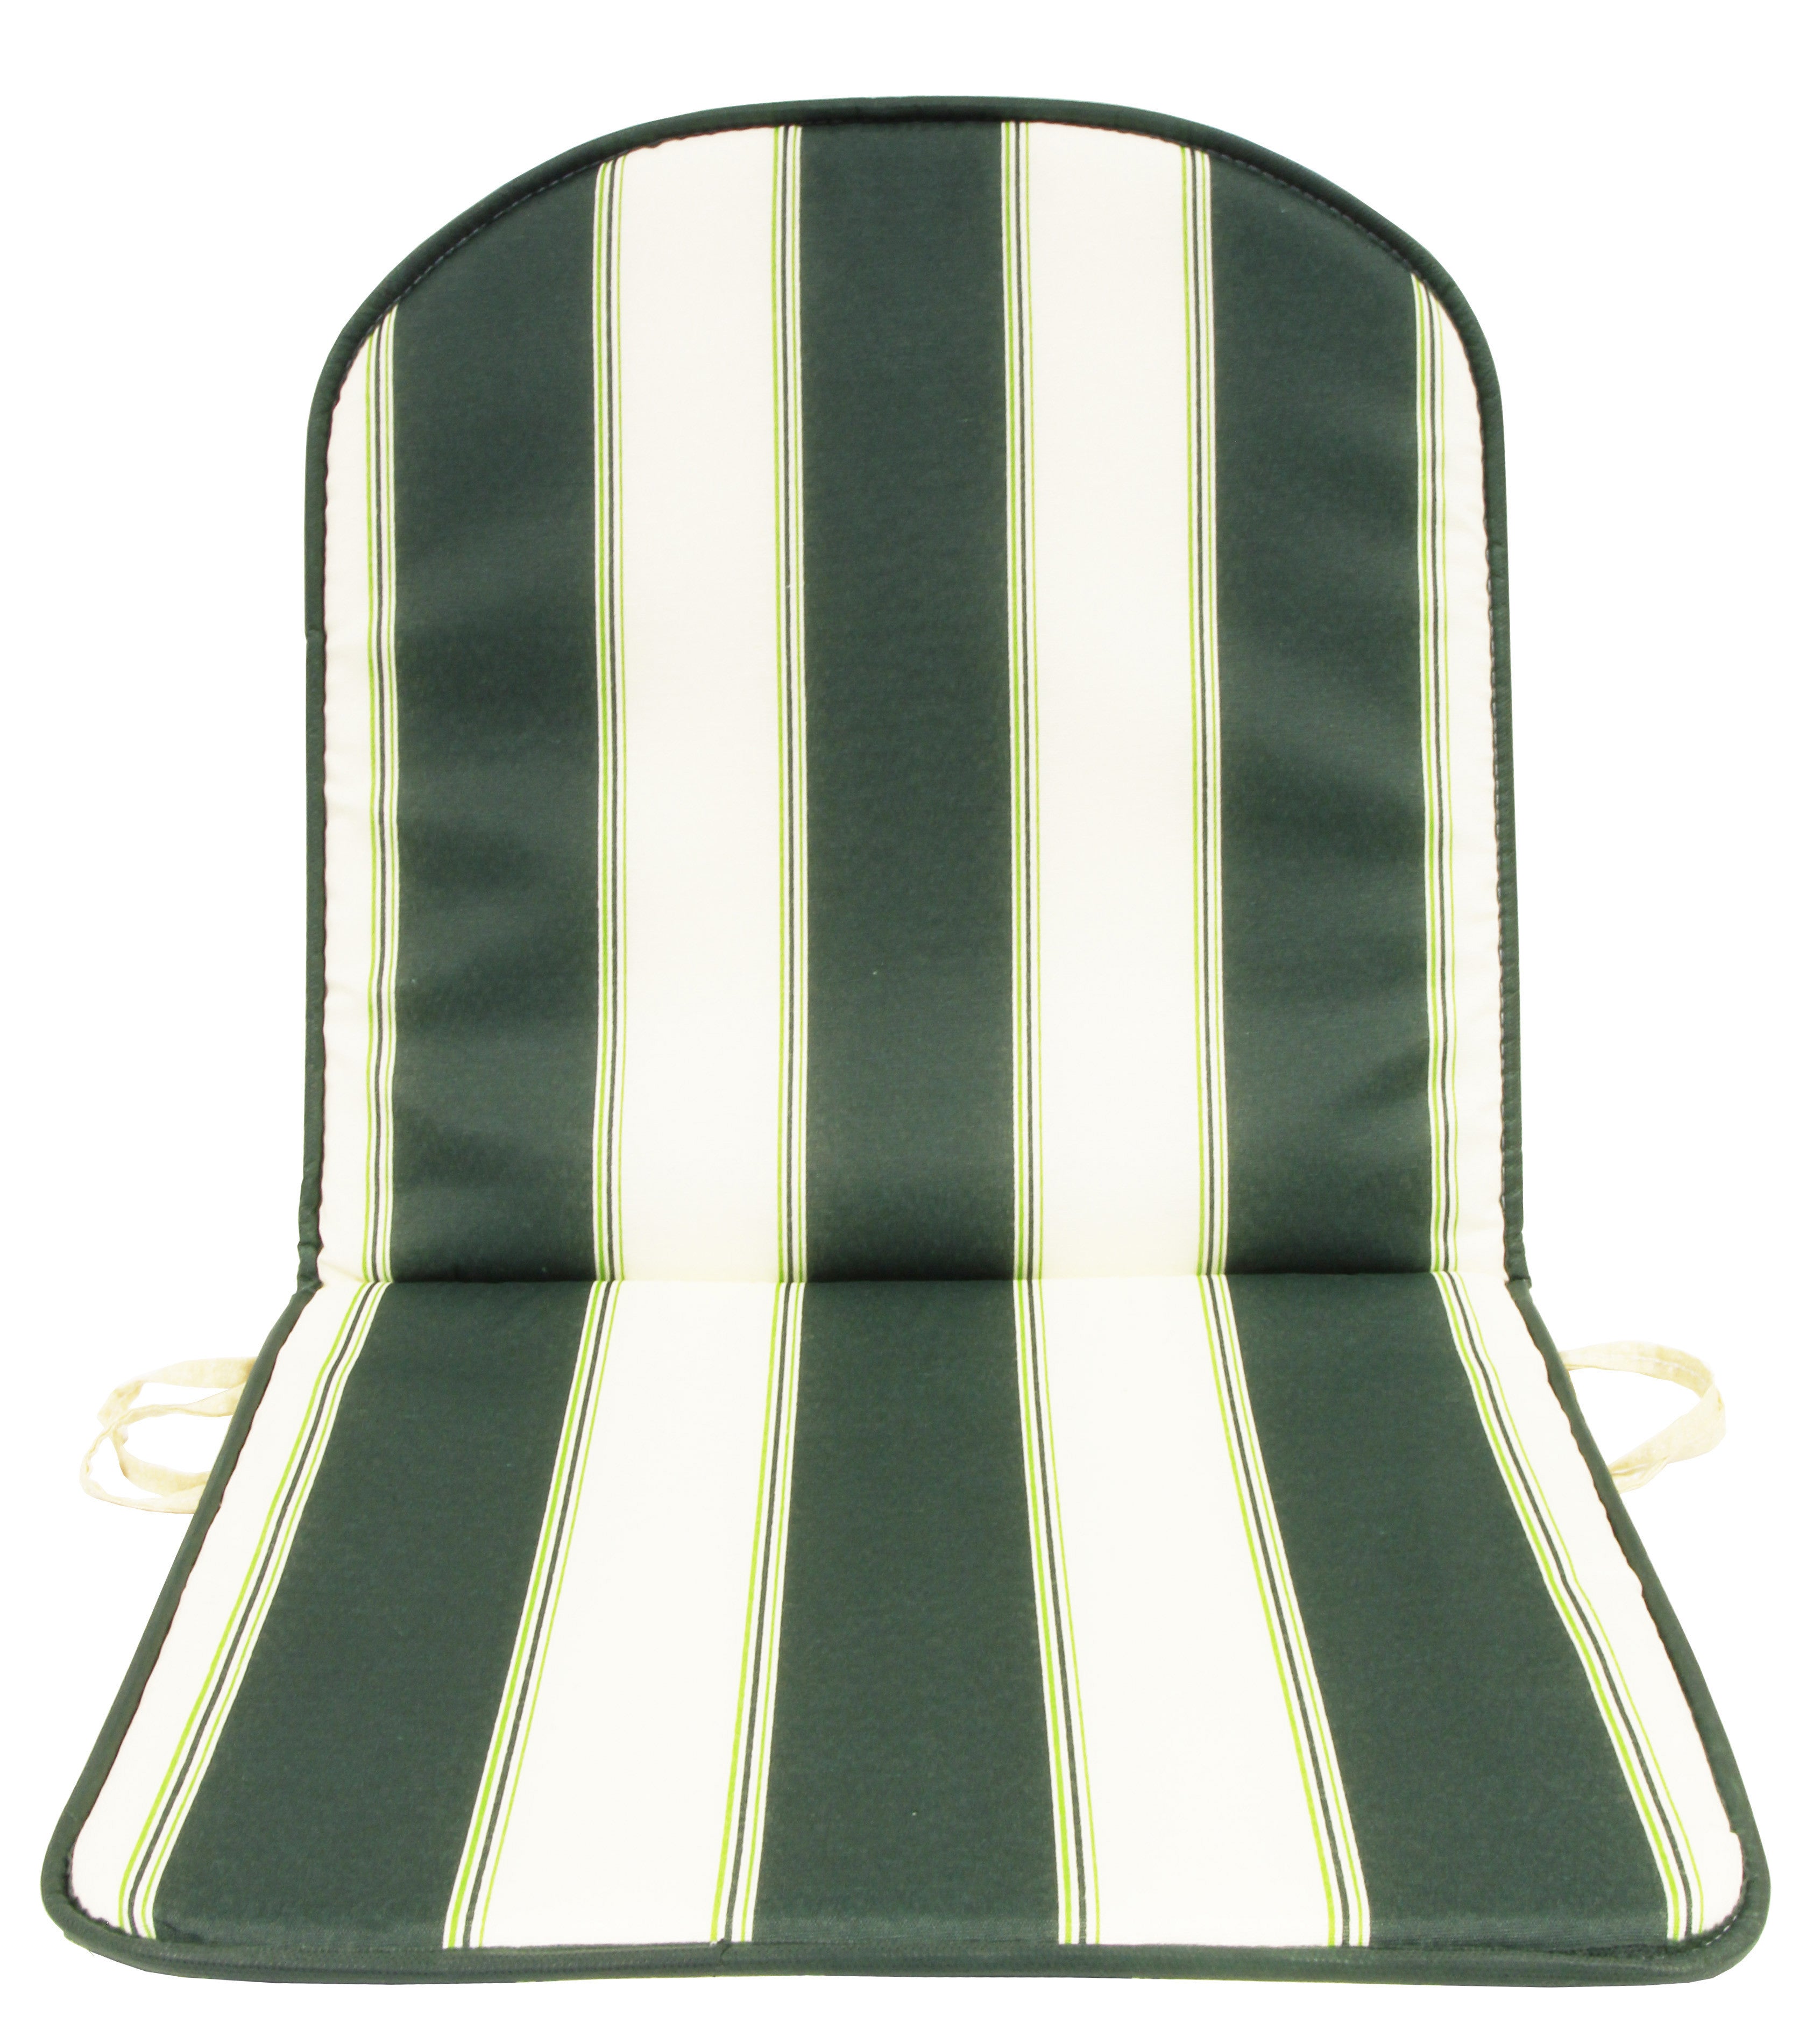 Cuscino schienale basso double rigato verde GEMITEX